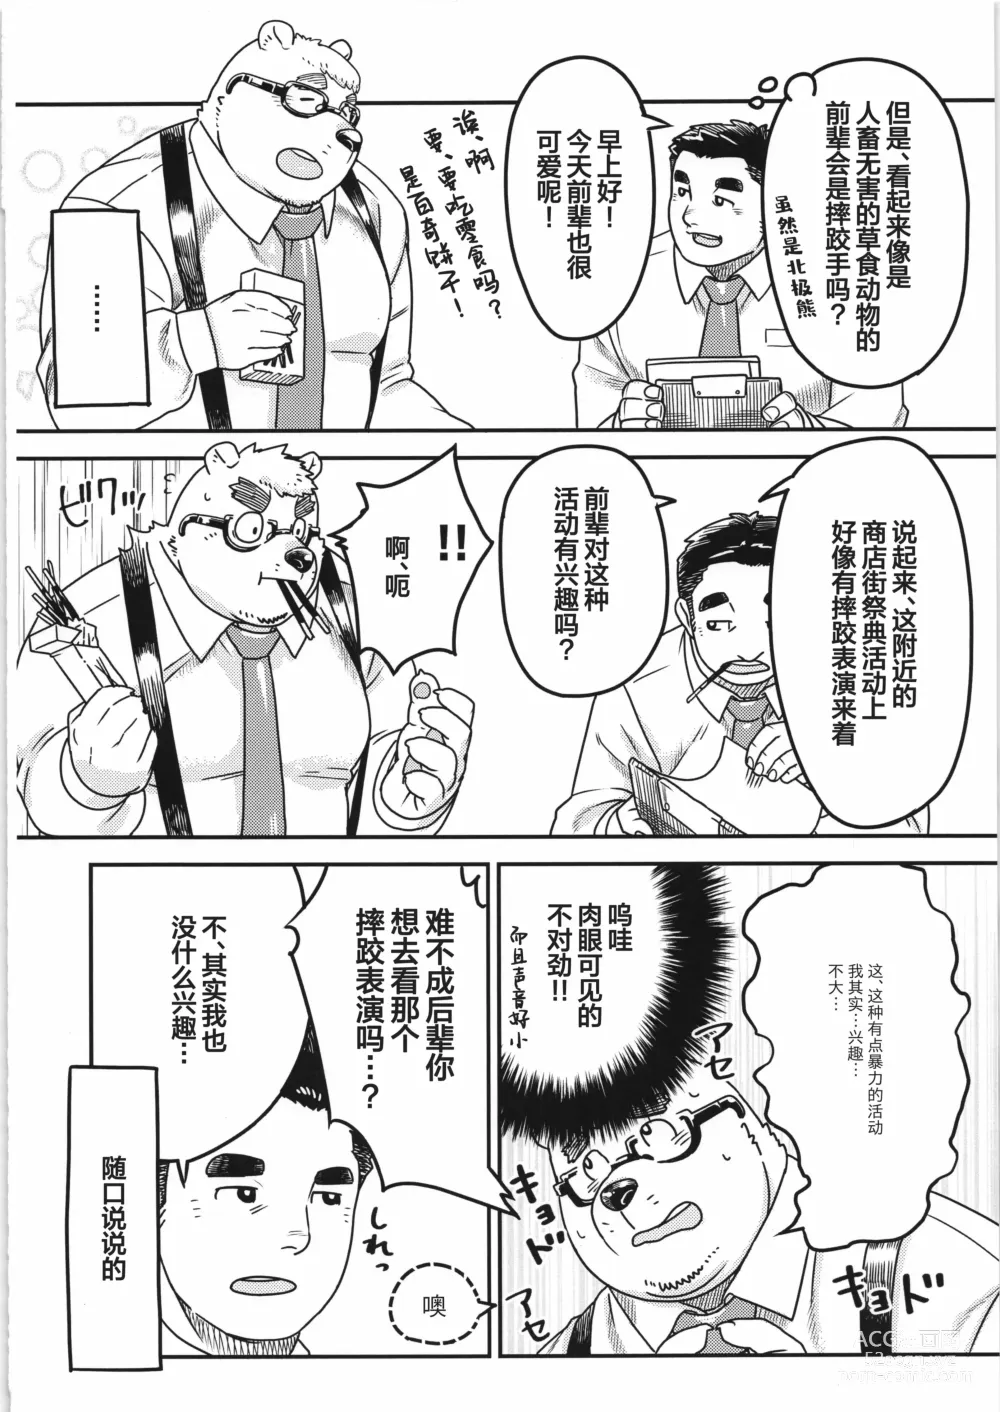 Page 9 of manga CHOGOKIN-004